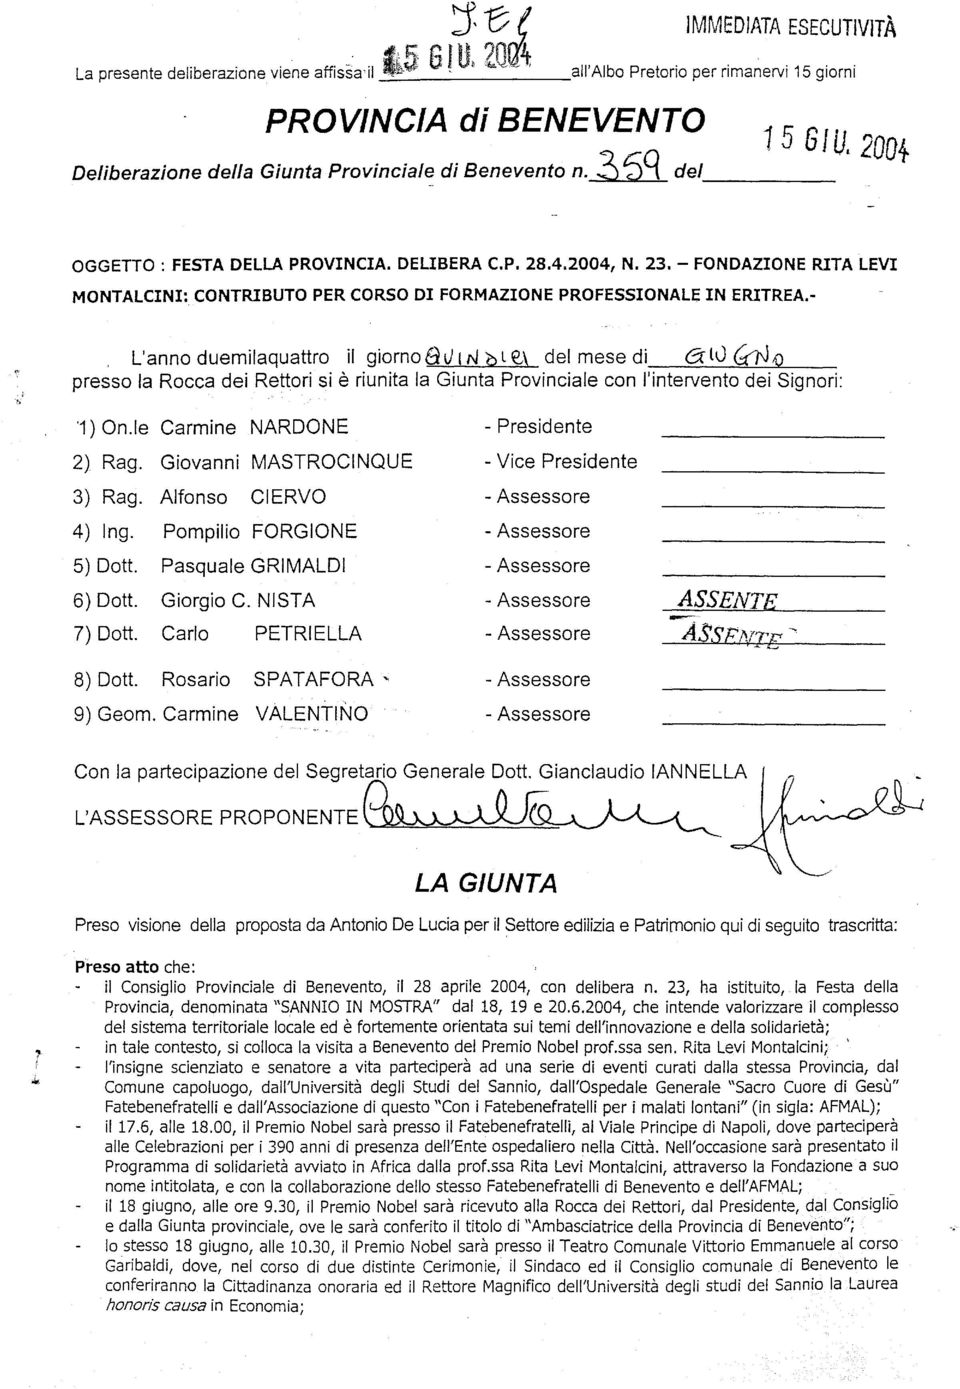 P. 28.4.2004, N. 23. - FONDAZIONE RITA LEVI MONTALCINI: CONTRIBUTO PER CORSO DI FORMAZIONE PROFESSIONALE IN ERITREA.